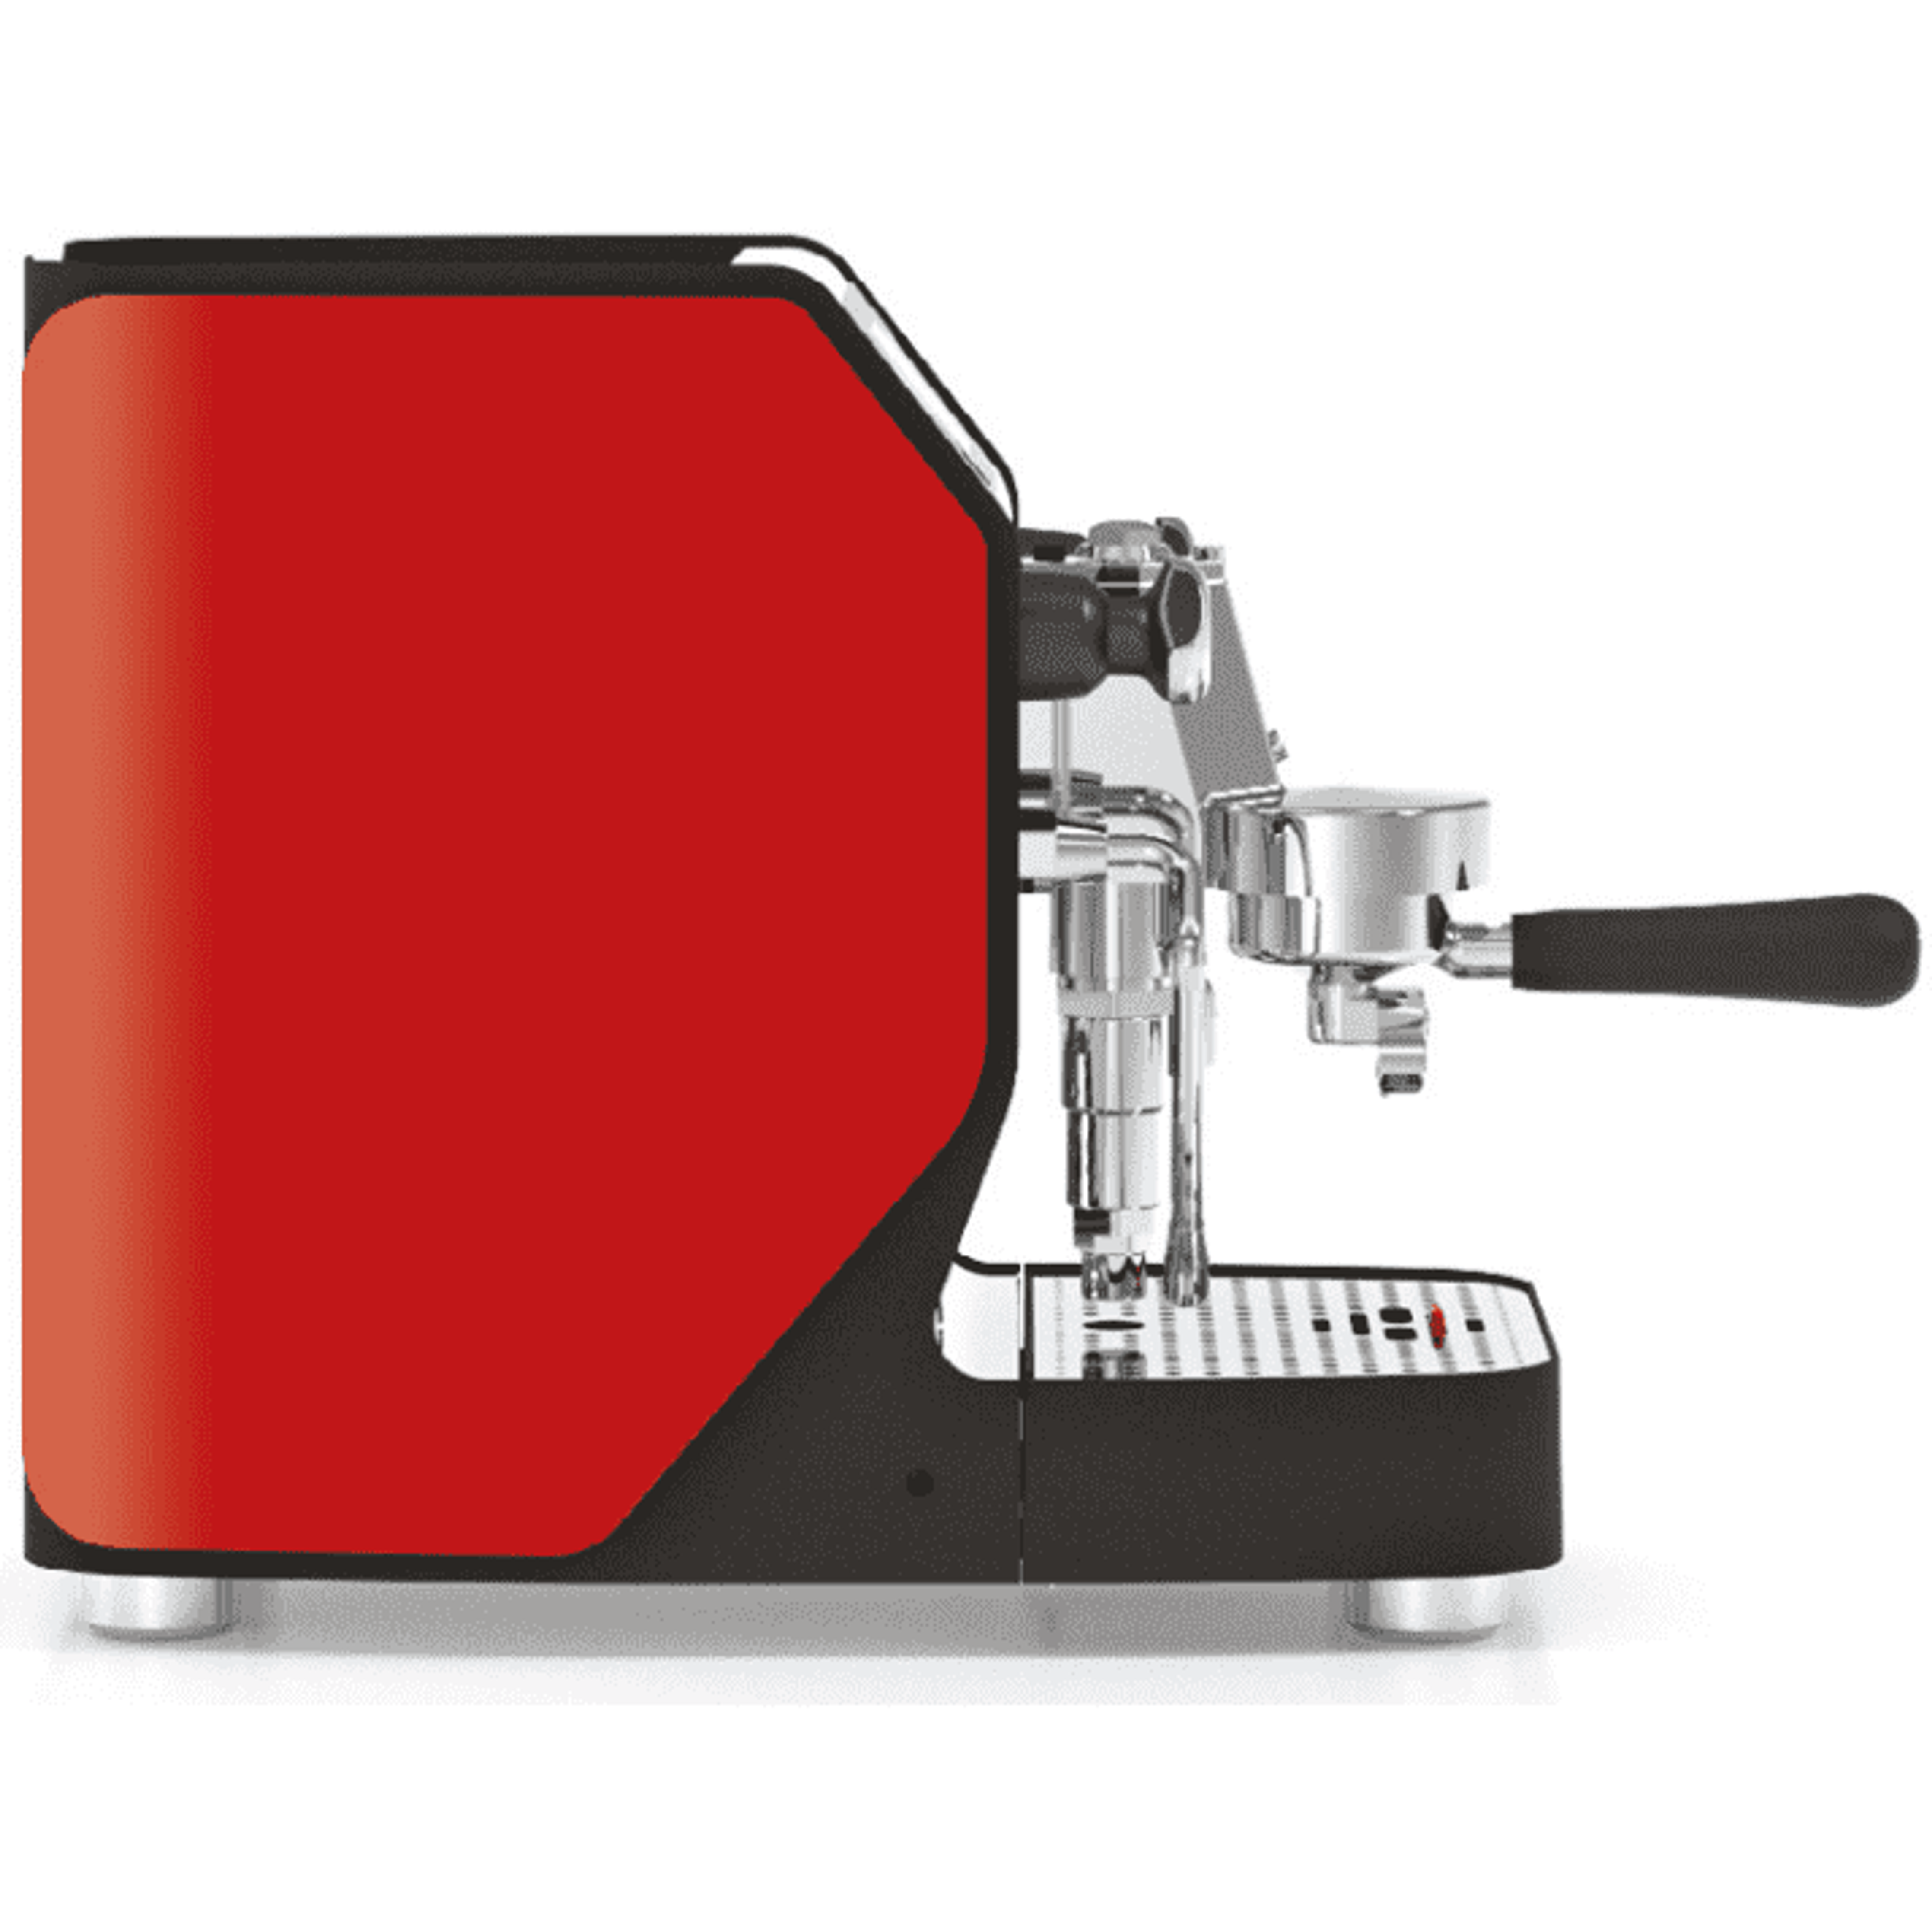 Vibiemme VBM New DOMOBAR Super Digital - Druckprofile, Dualboiler, Getriebepumpe, verschiedene Farben Espressomaschinen VBM Rot   - Rheinland.Coffee